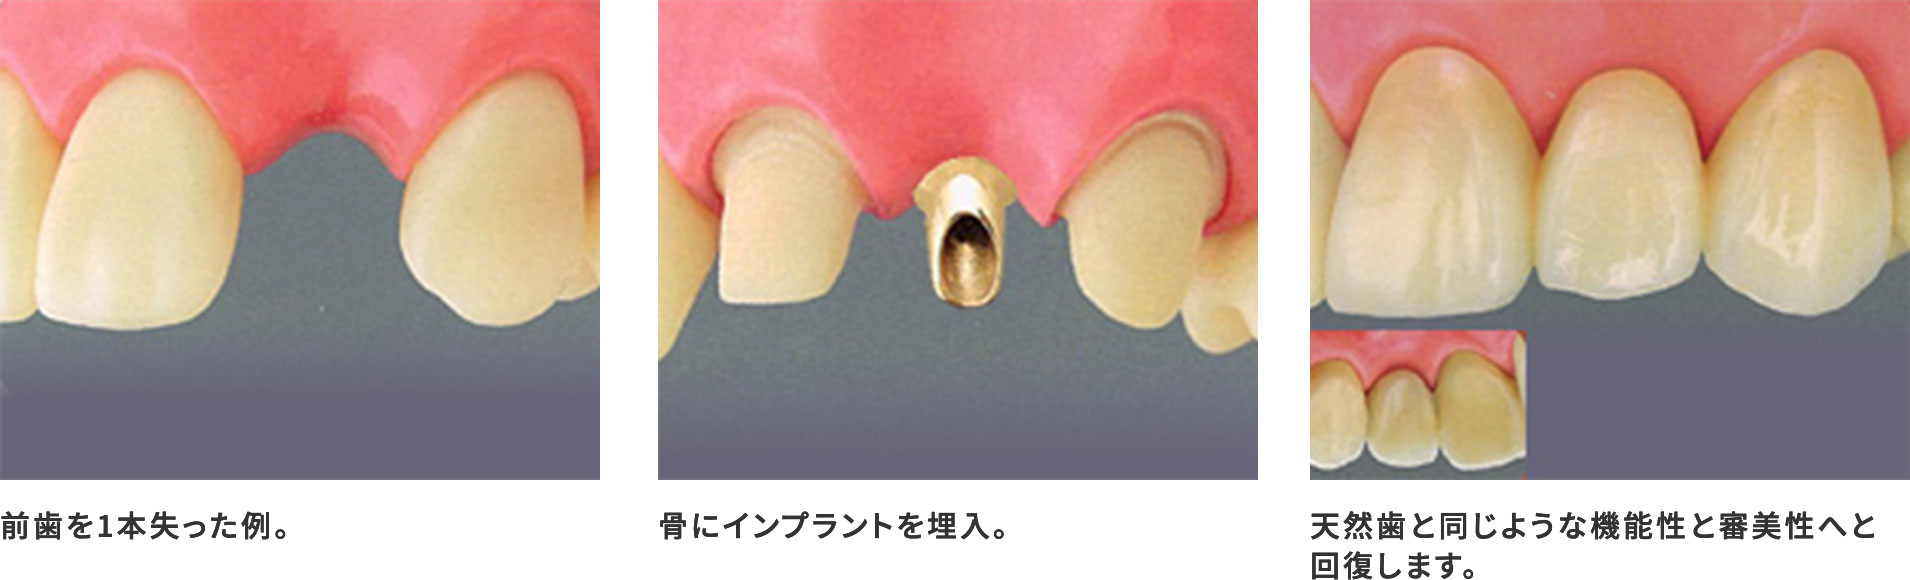 インプラントによる歯科治療のイメージ